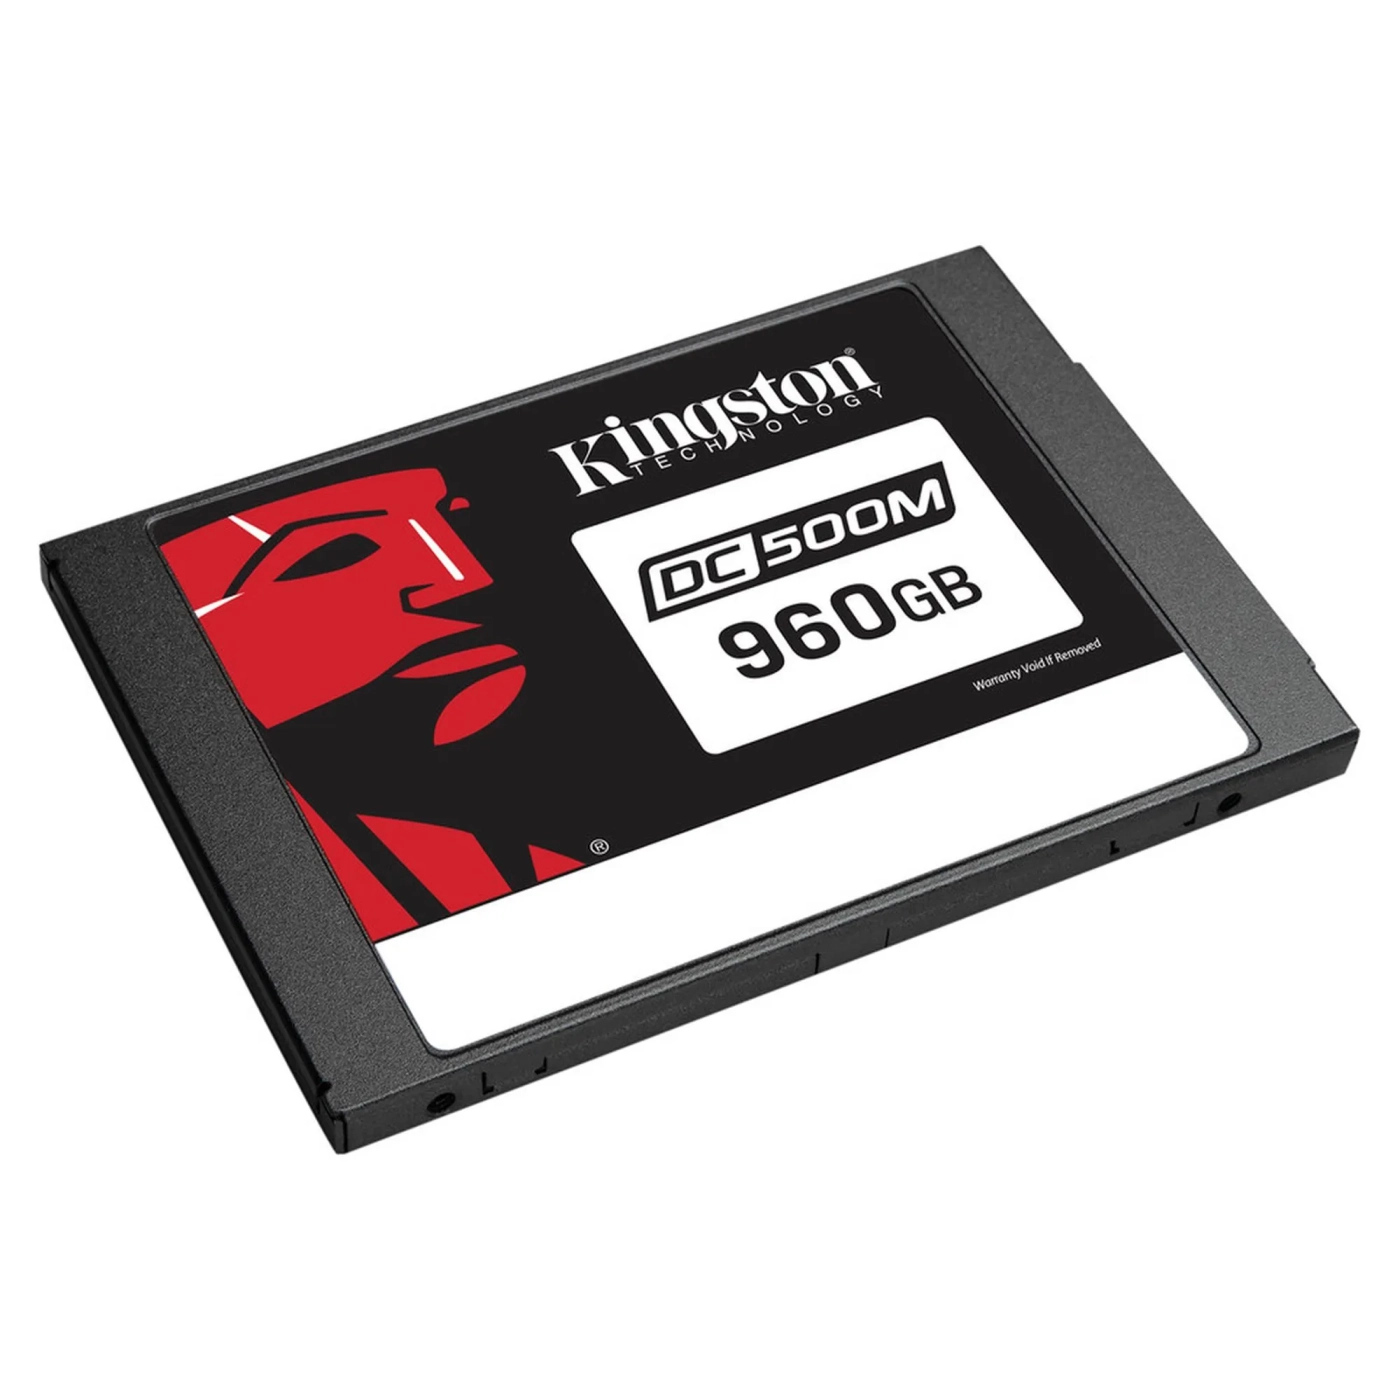 Купити SSD диск Kingston DC500M 960GB 2.5" SATA III (SEDC500M/960G) - фото 2